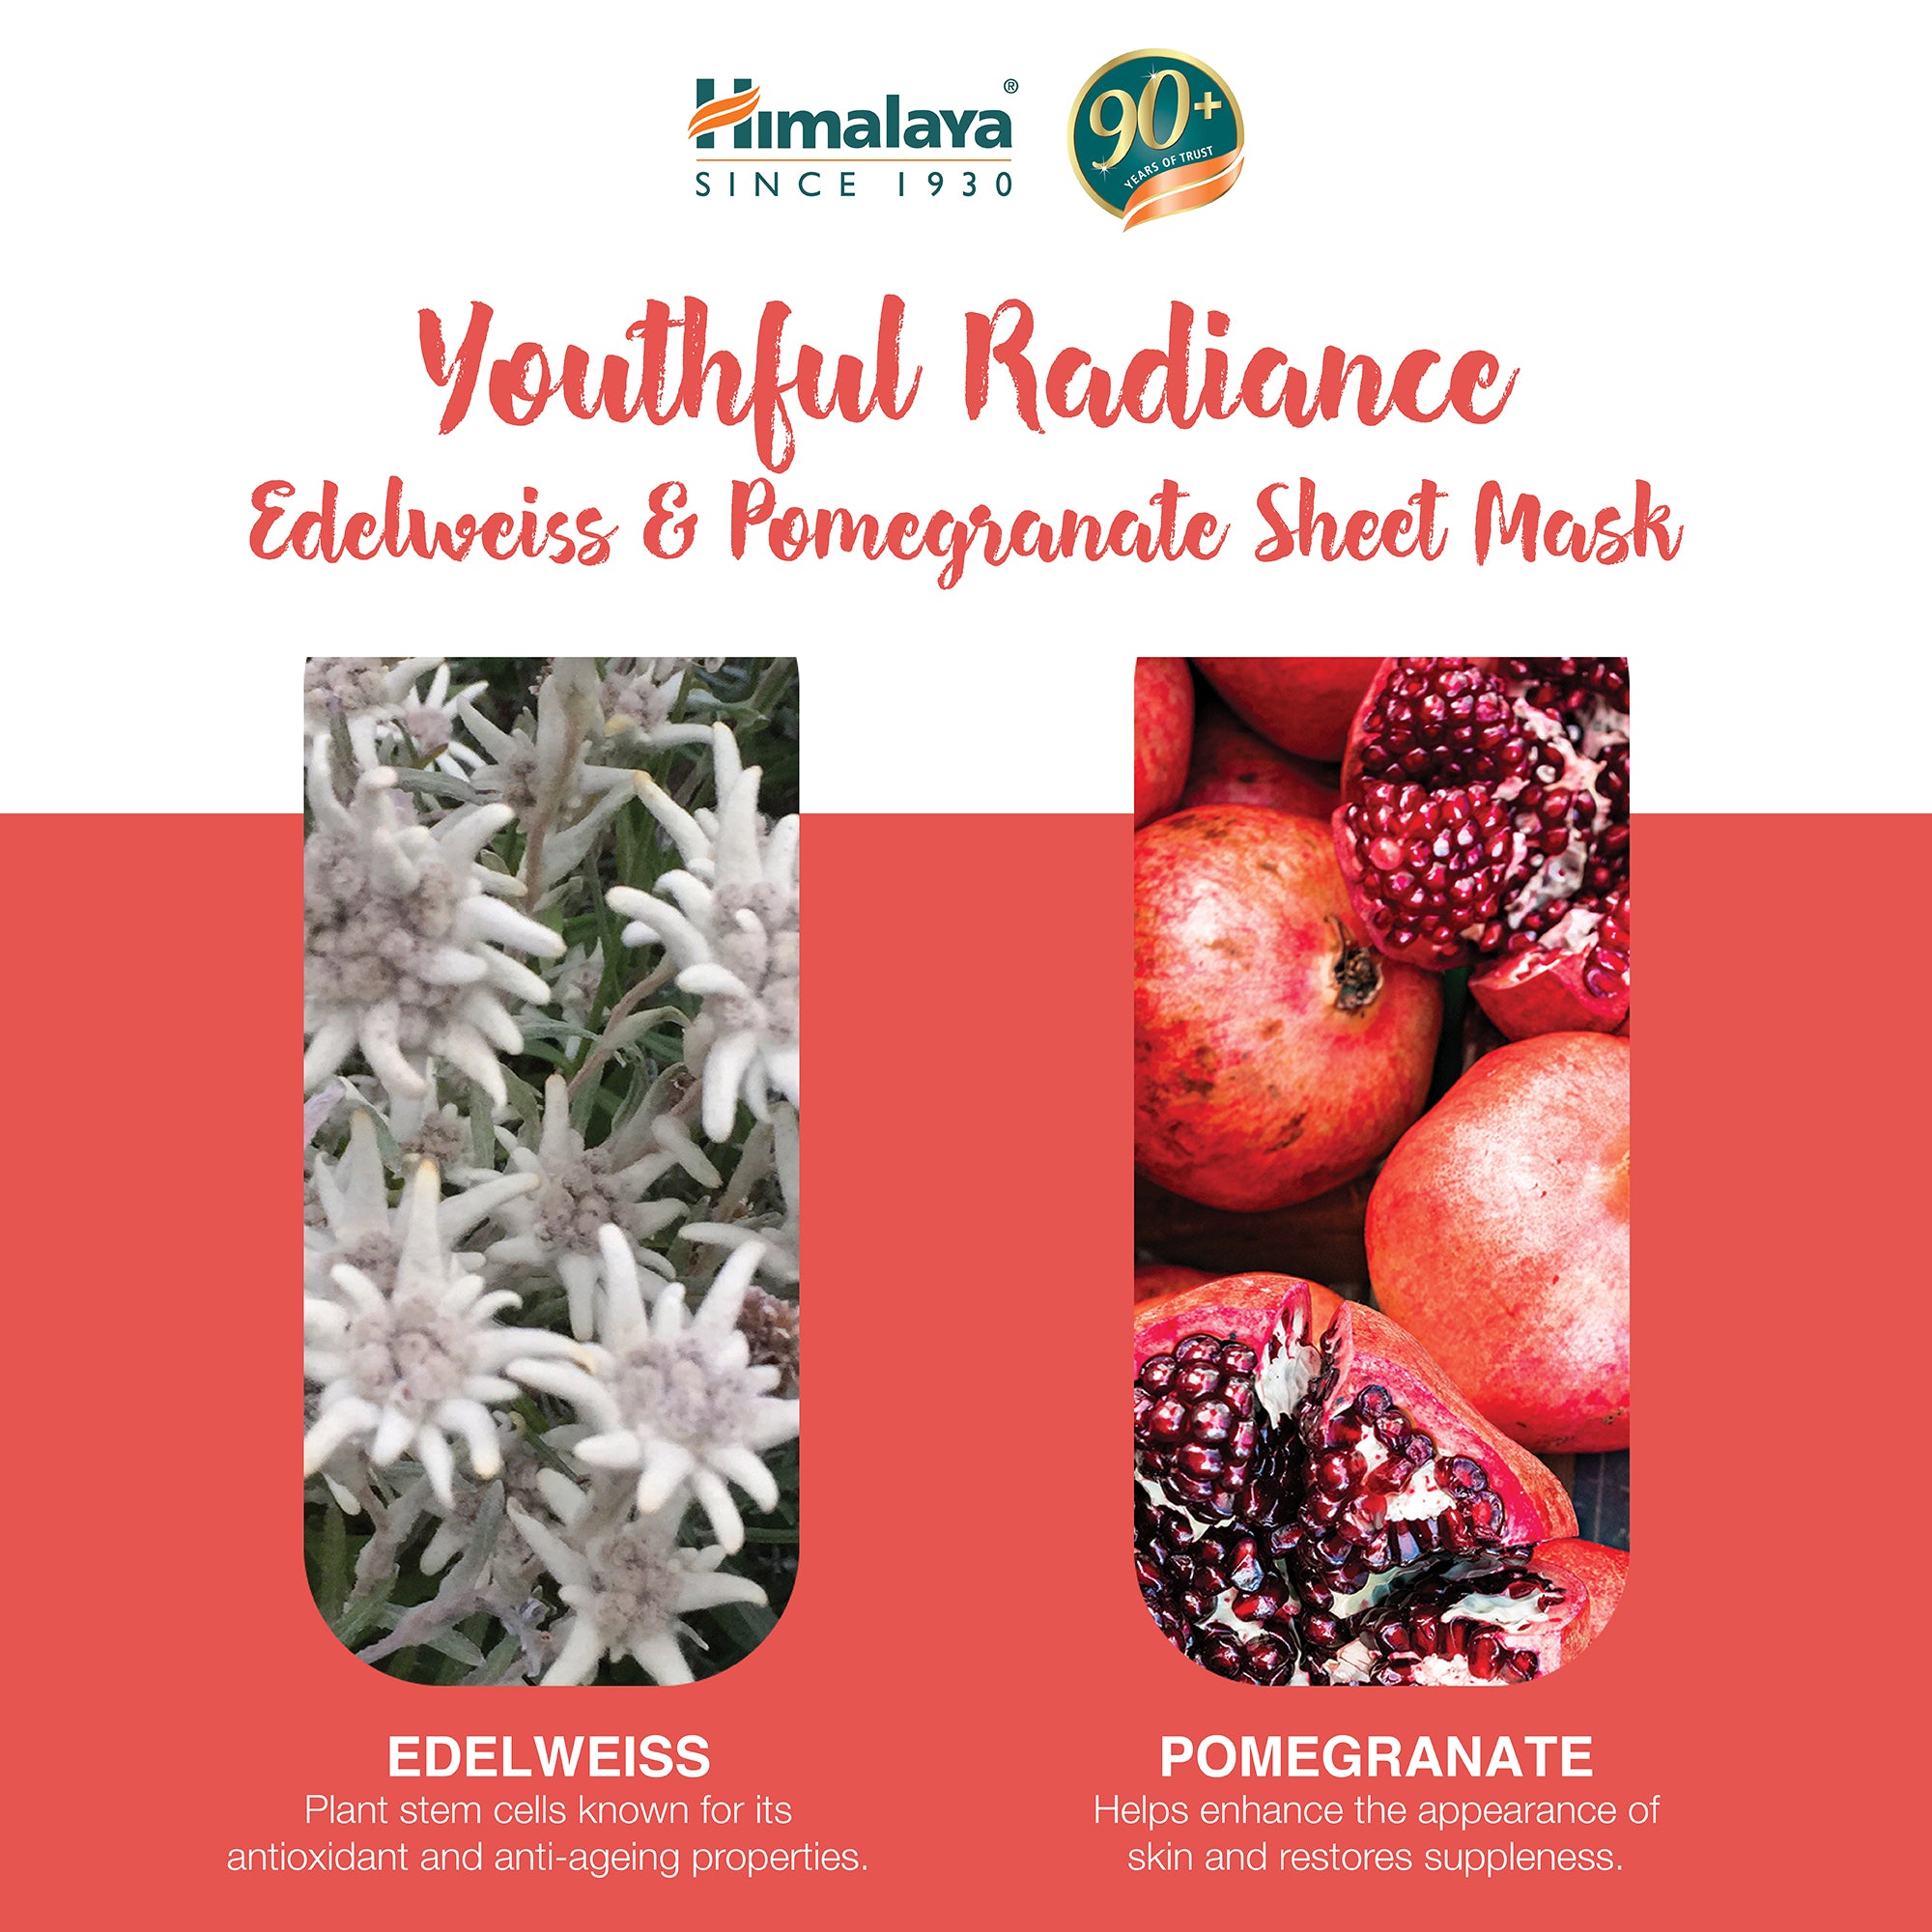 Himalaya Youthful Radiance Edelweiss & Pomegranate Sheet Mask - 30ml